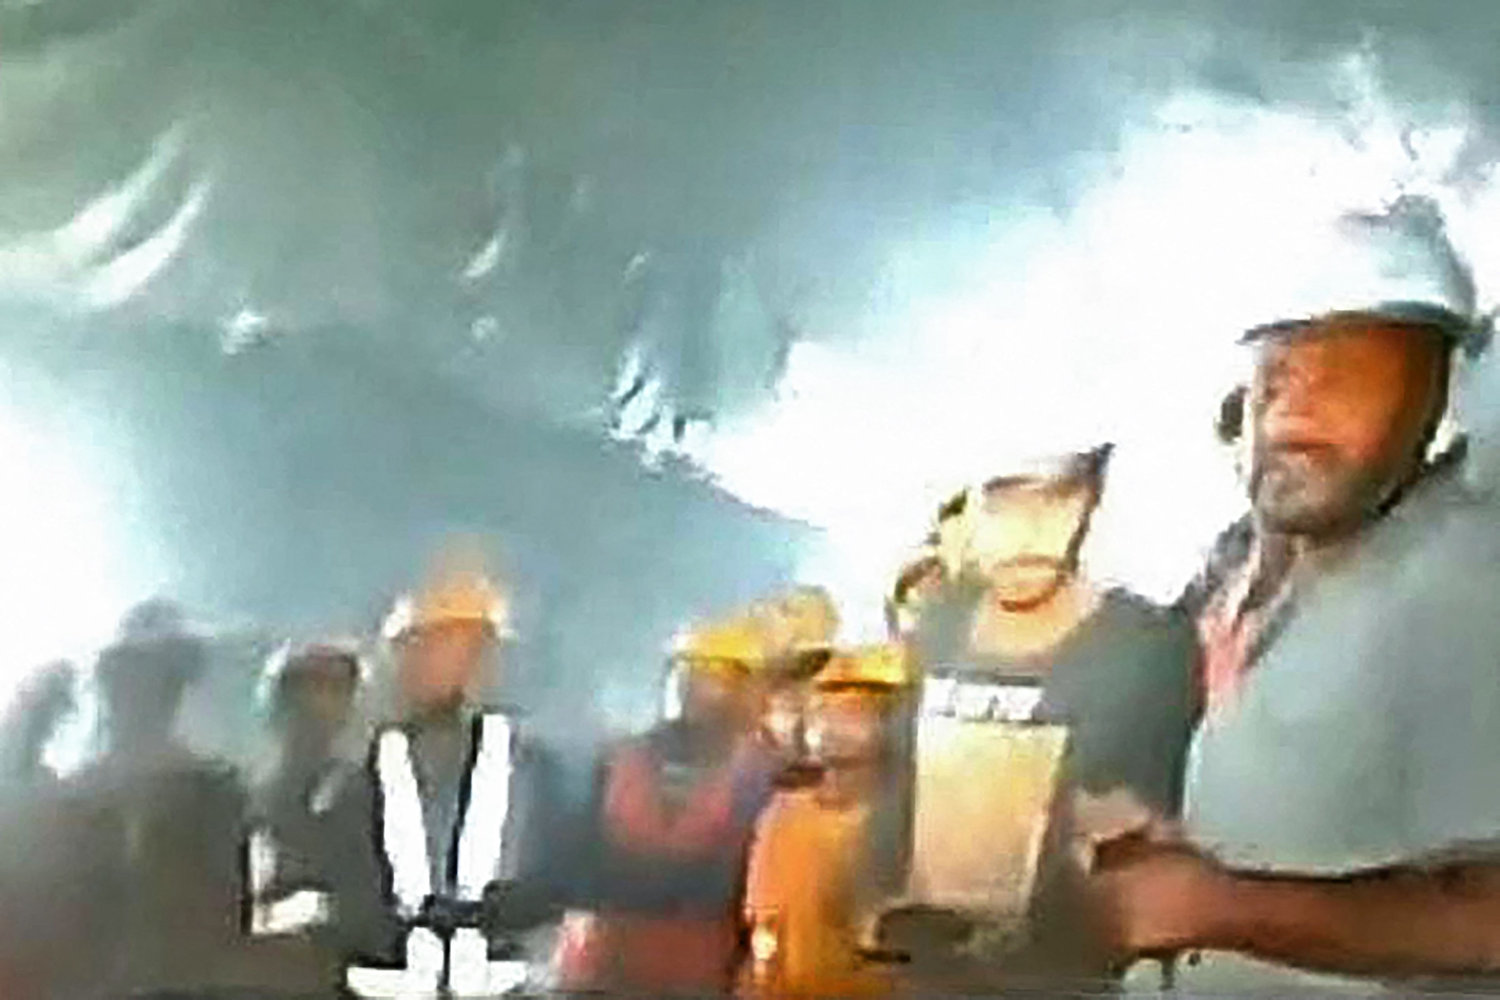 første billeder viser indiske arbejdere efter ni dage i tunnel